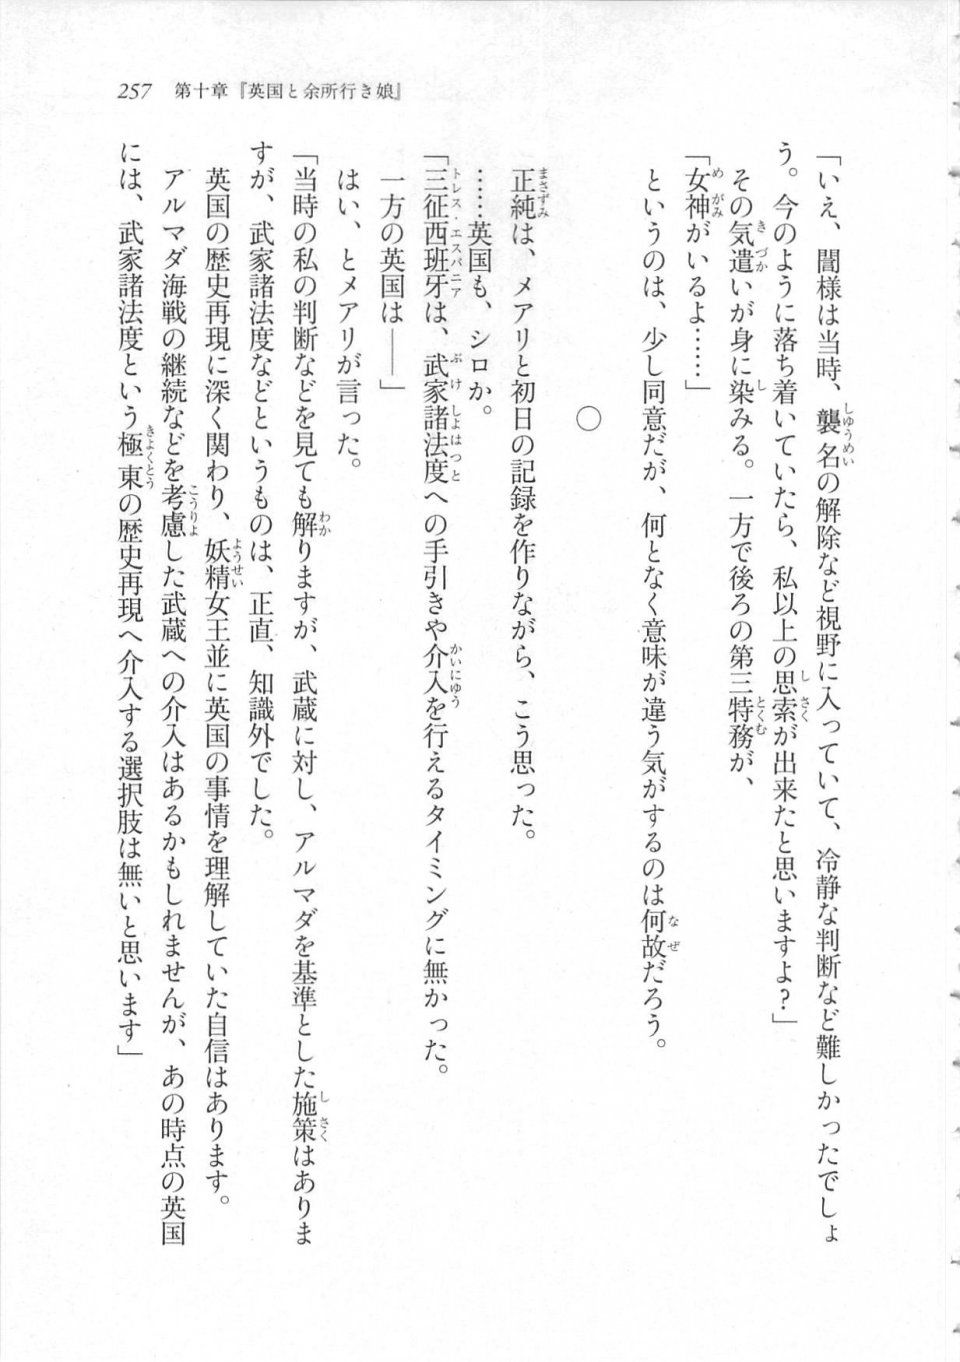 Kyoukai Senjou no Horizon LN Sidestory Vol 3 - Photo #261